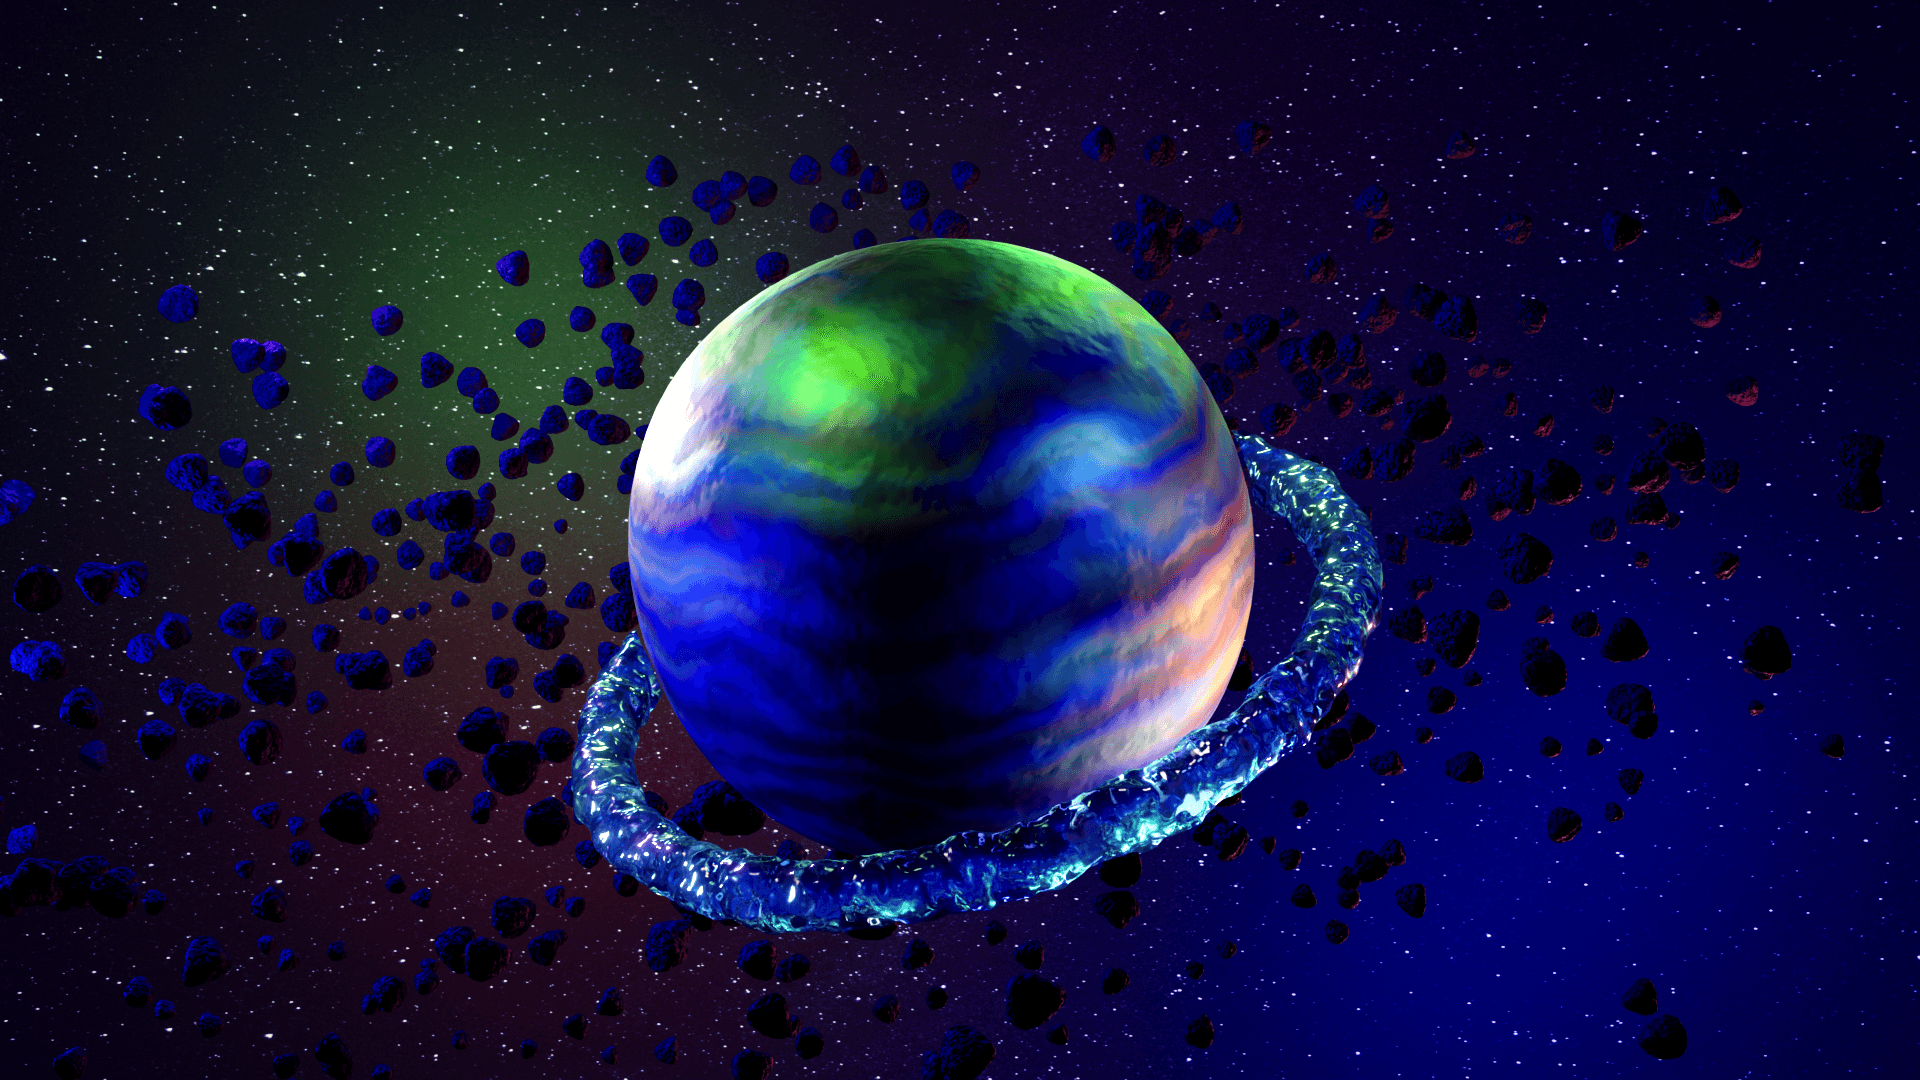 CSC Planet "MOA-2015-BLG-337 a" #3